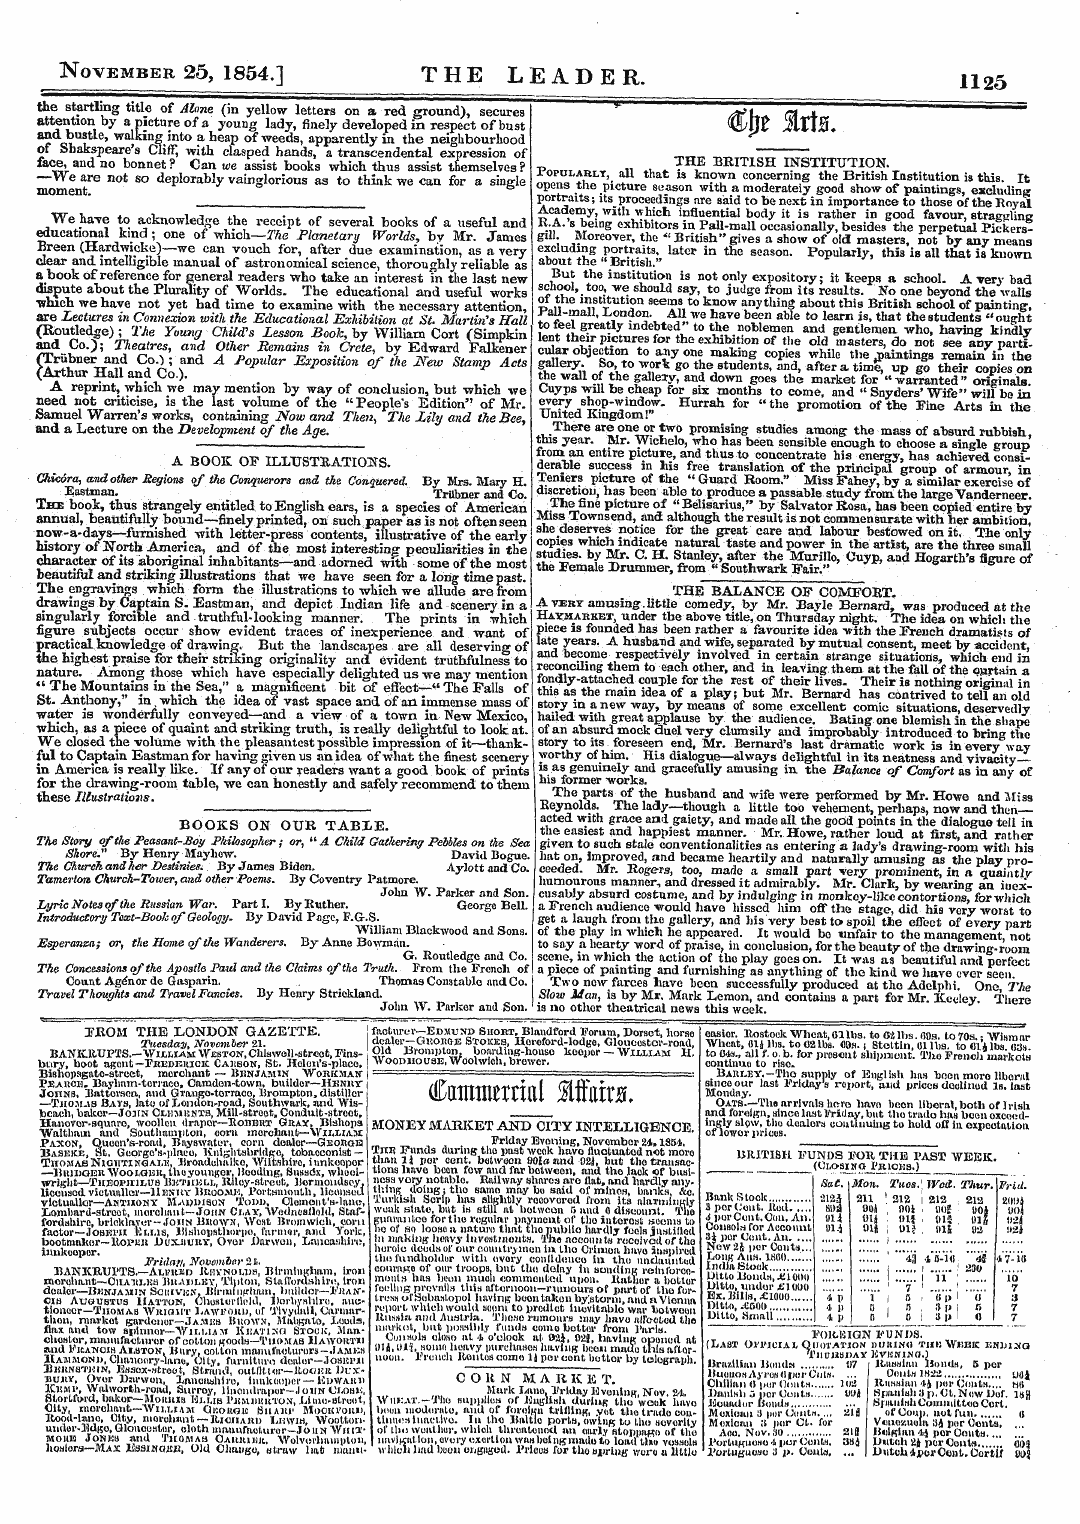 Leader (1850-1860): jS F Y, 2nd edition - November 25, 1854.] The Leader. 1125